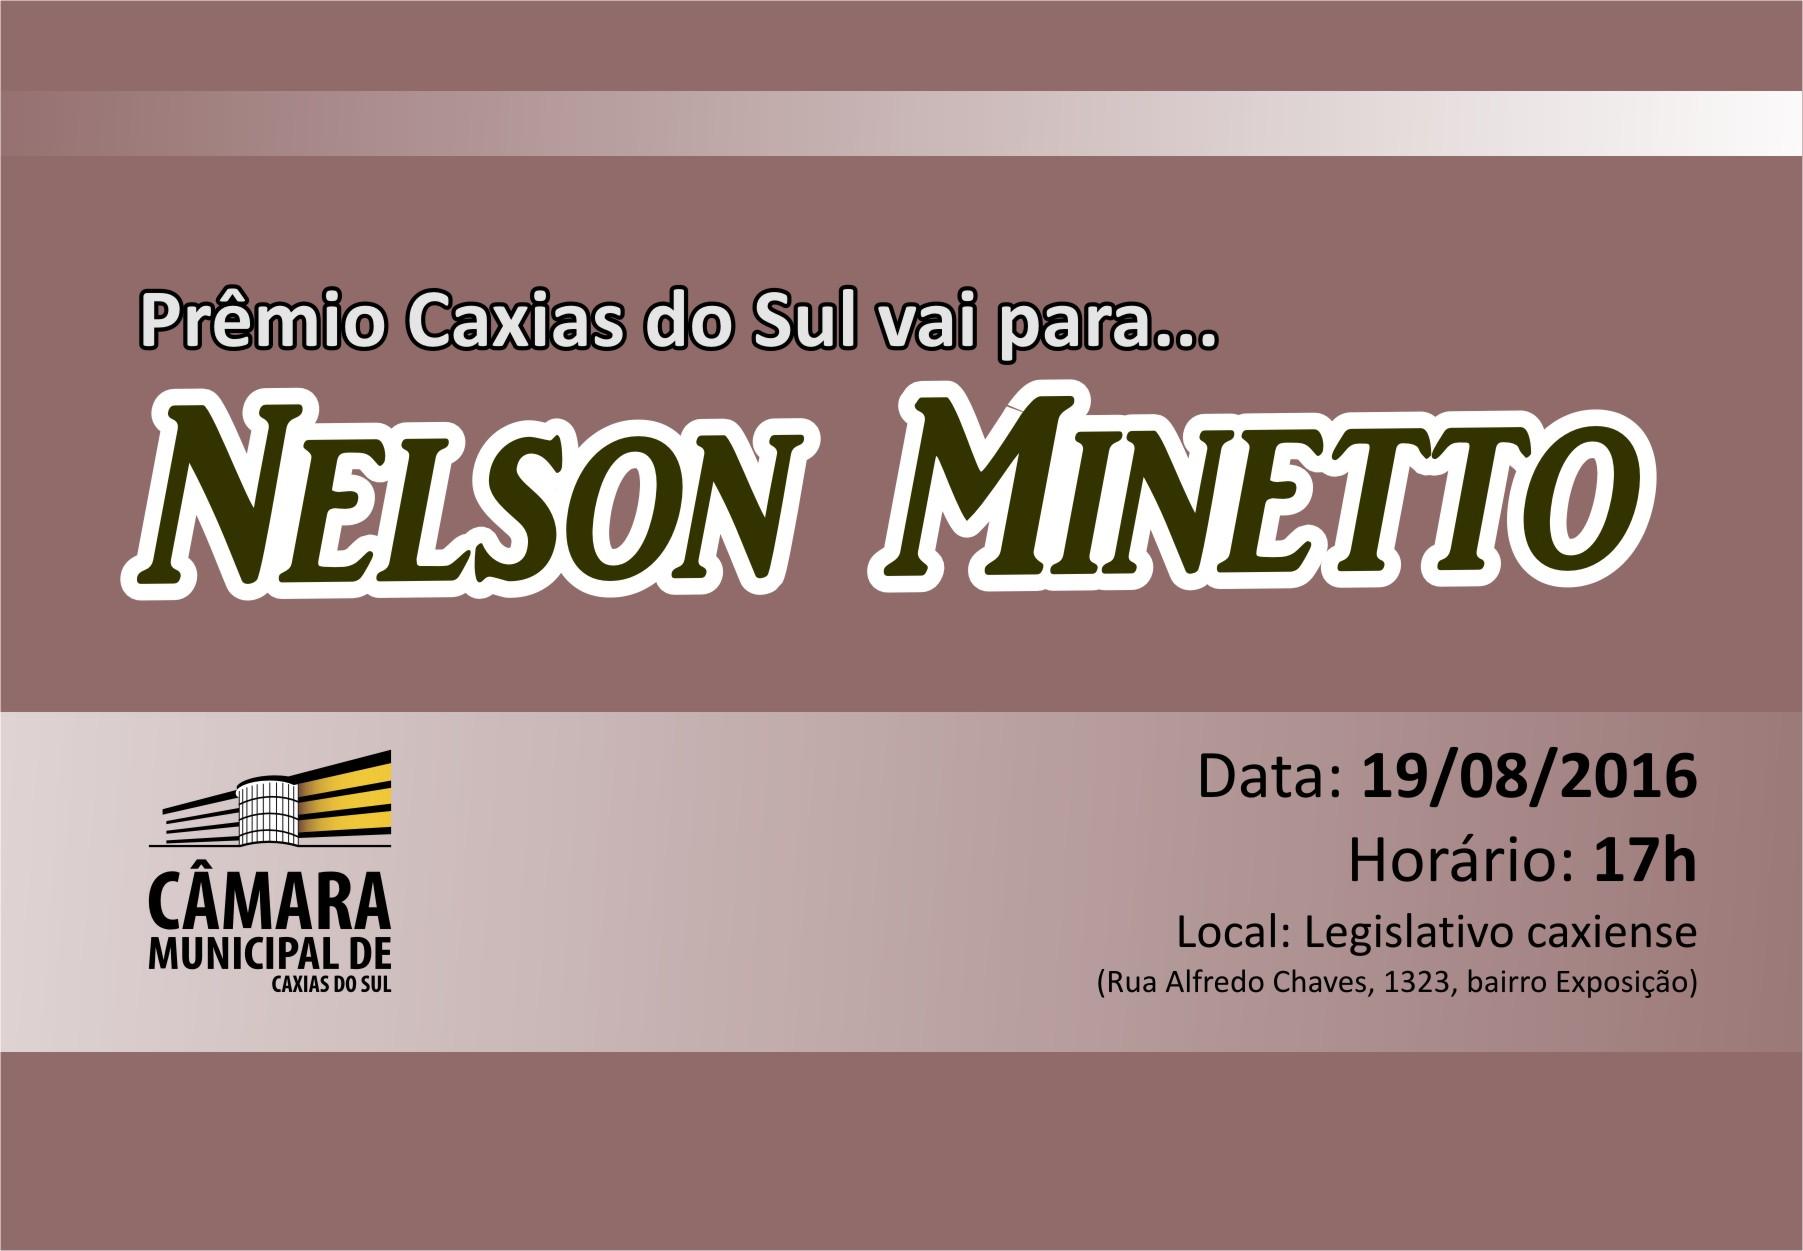 Leia mais sobre Empresário Nelson Minetto será agraciado com o Prêmio Caxias do Sul nesta sexta-feira